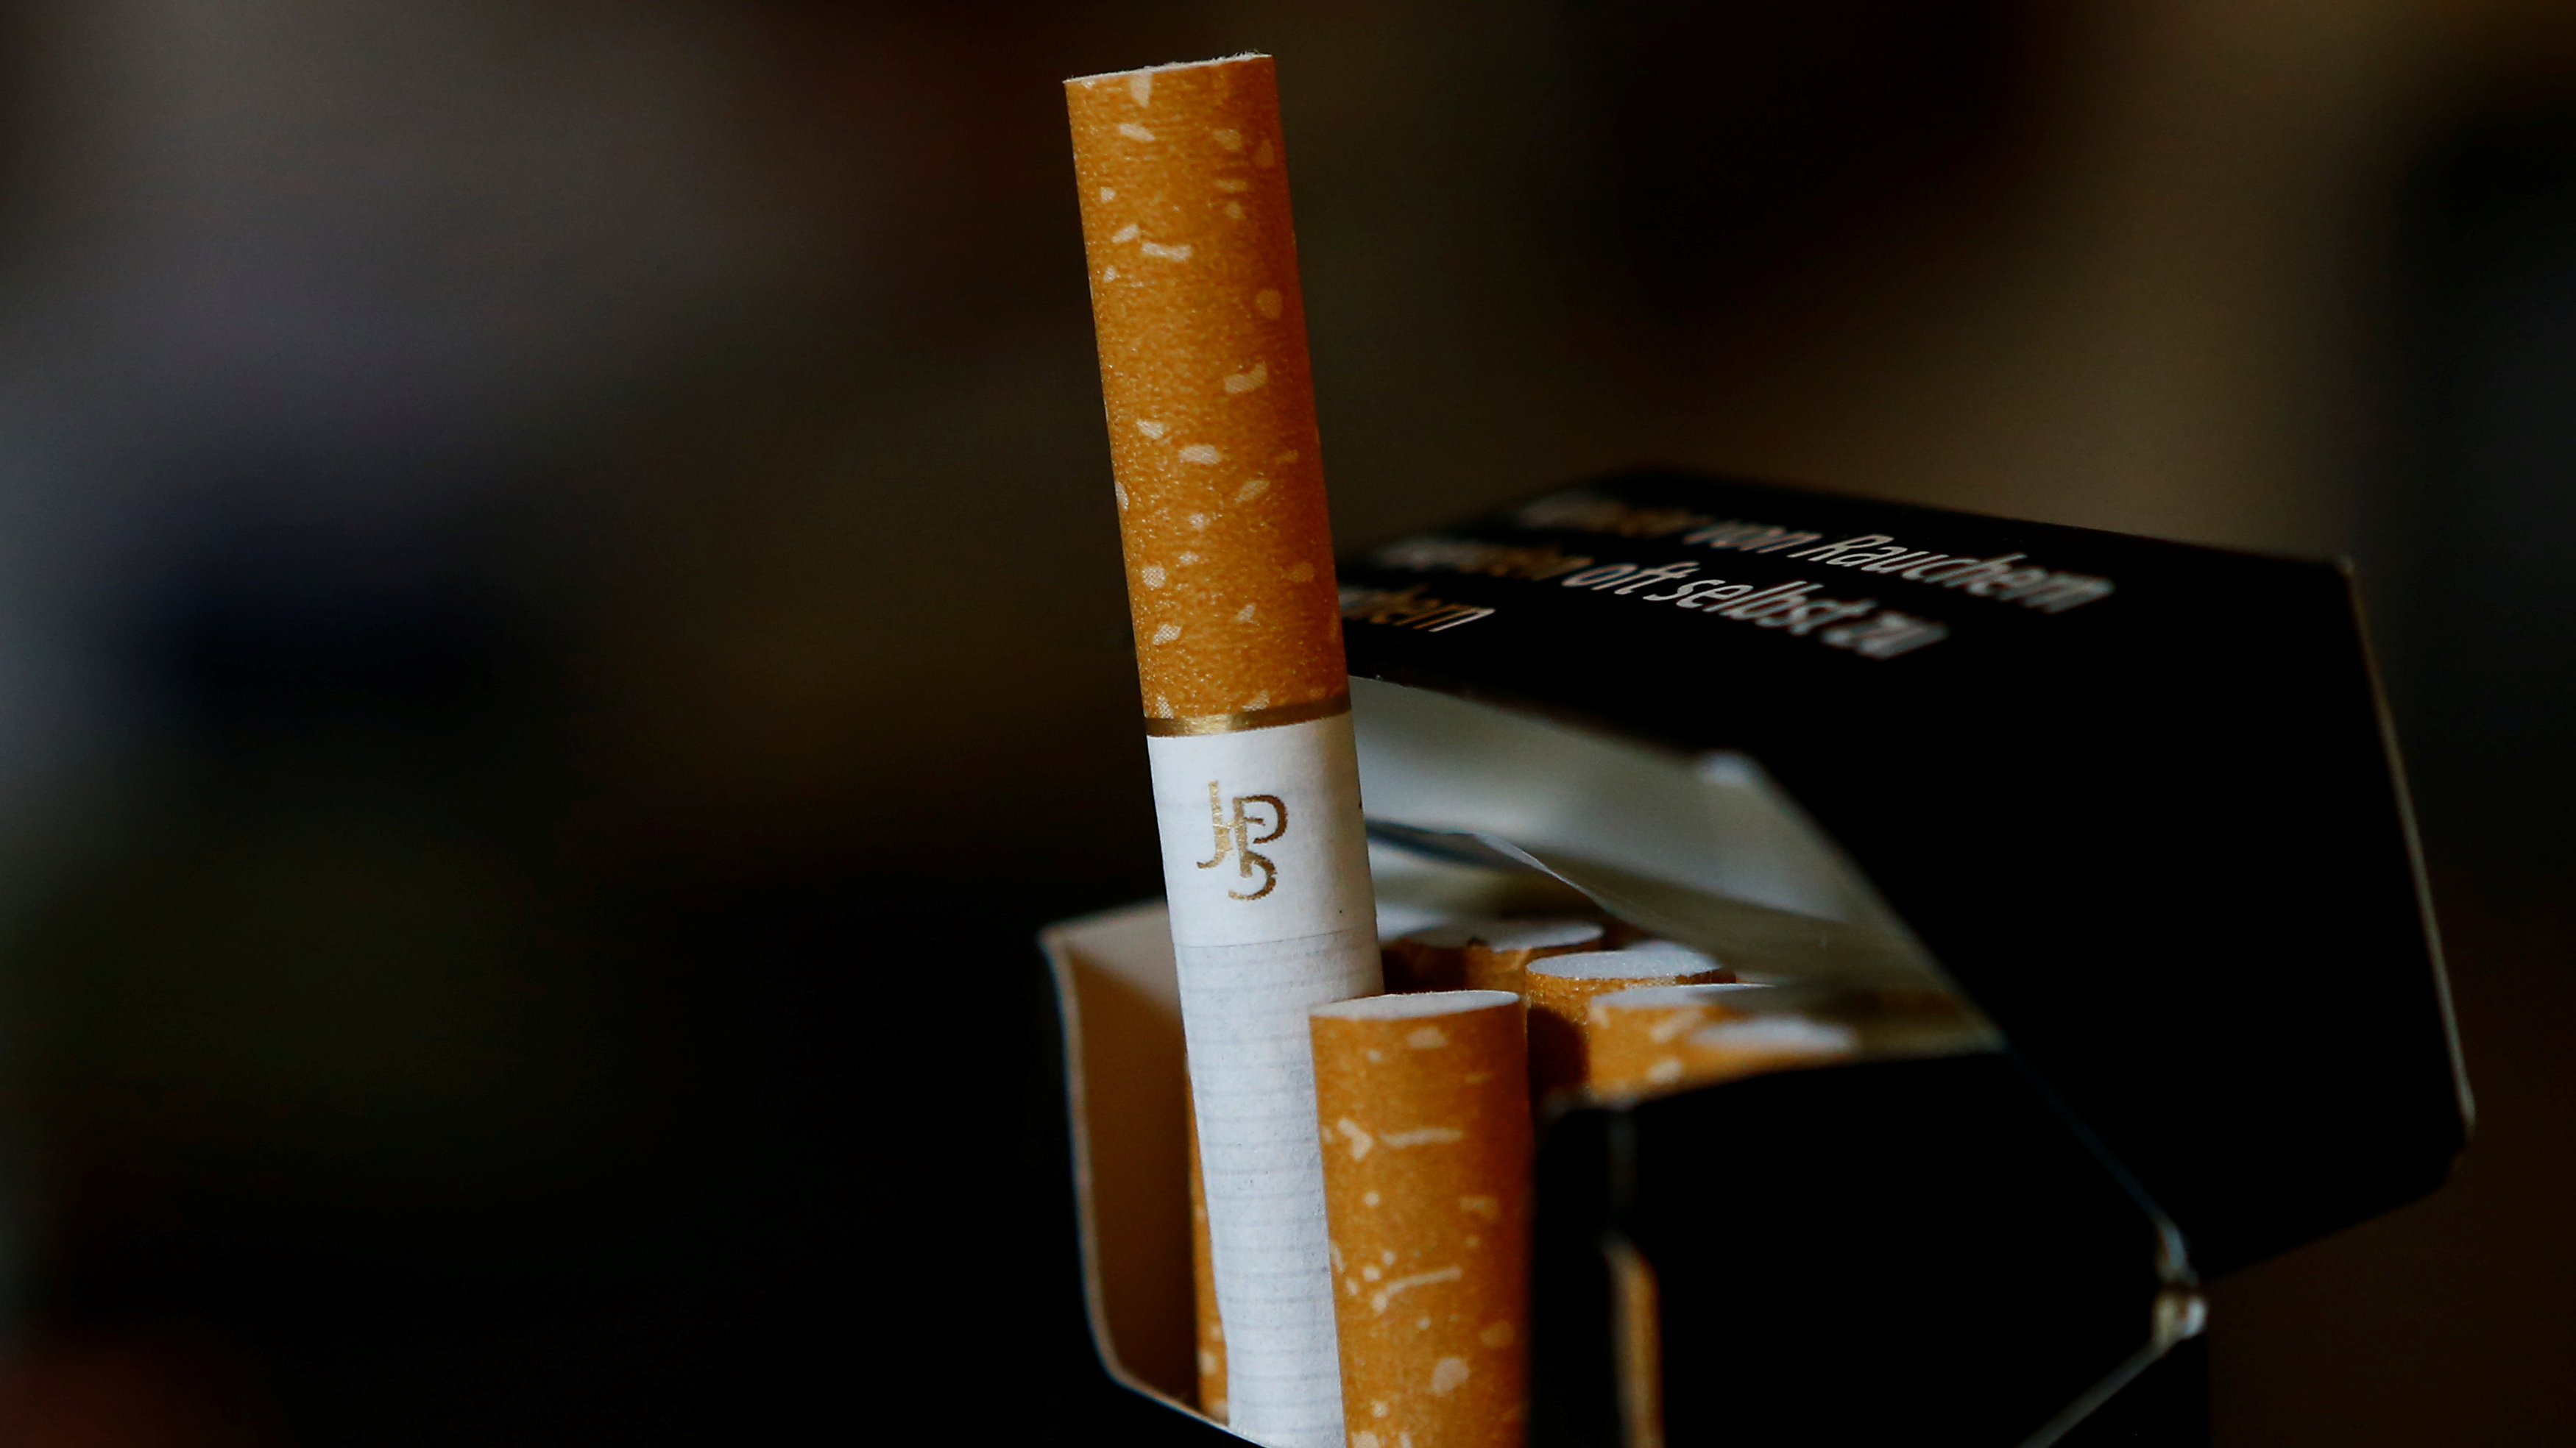 Un banco holandés niega el crédito a las tabacaleras por motivos éticos